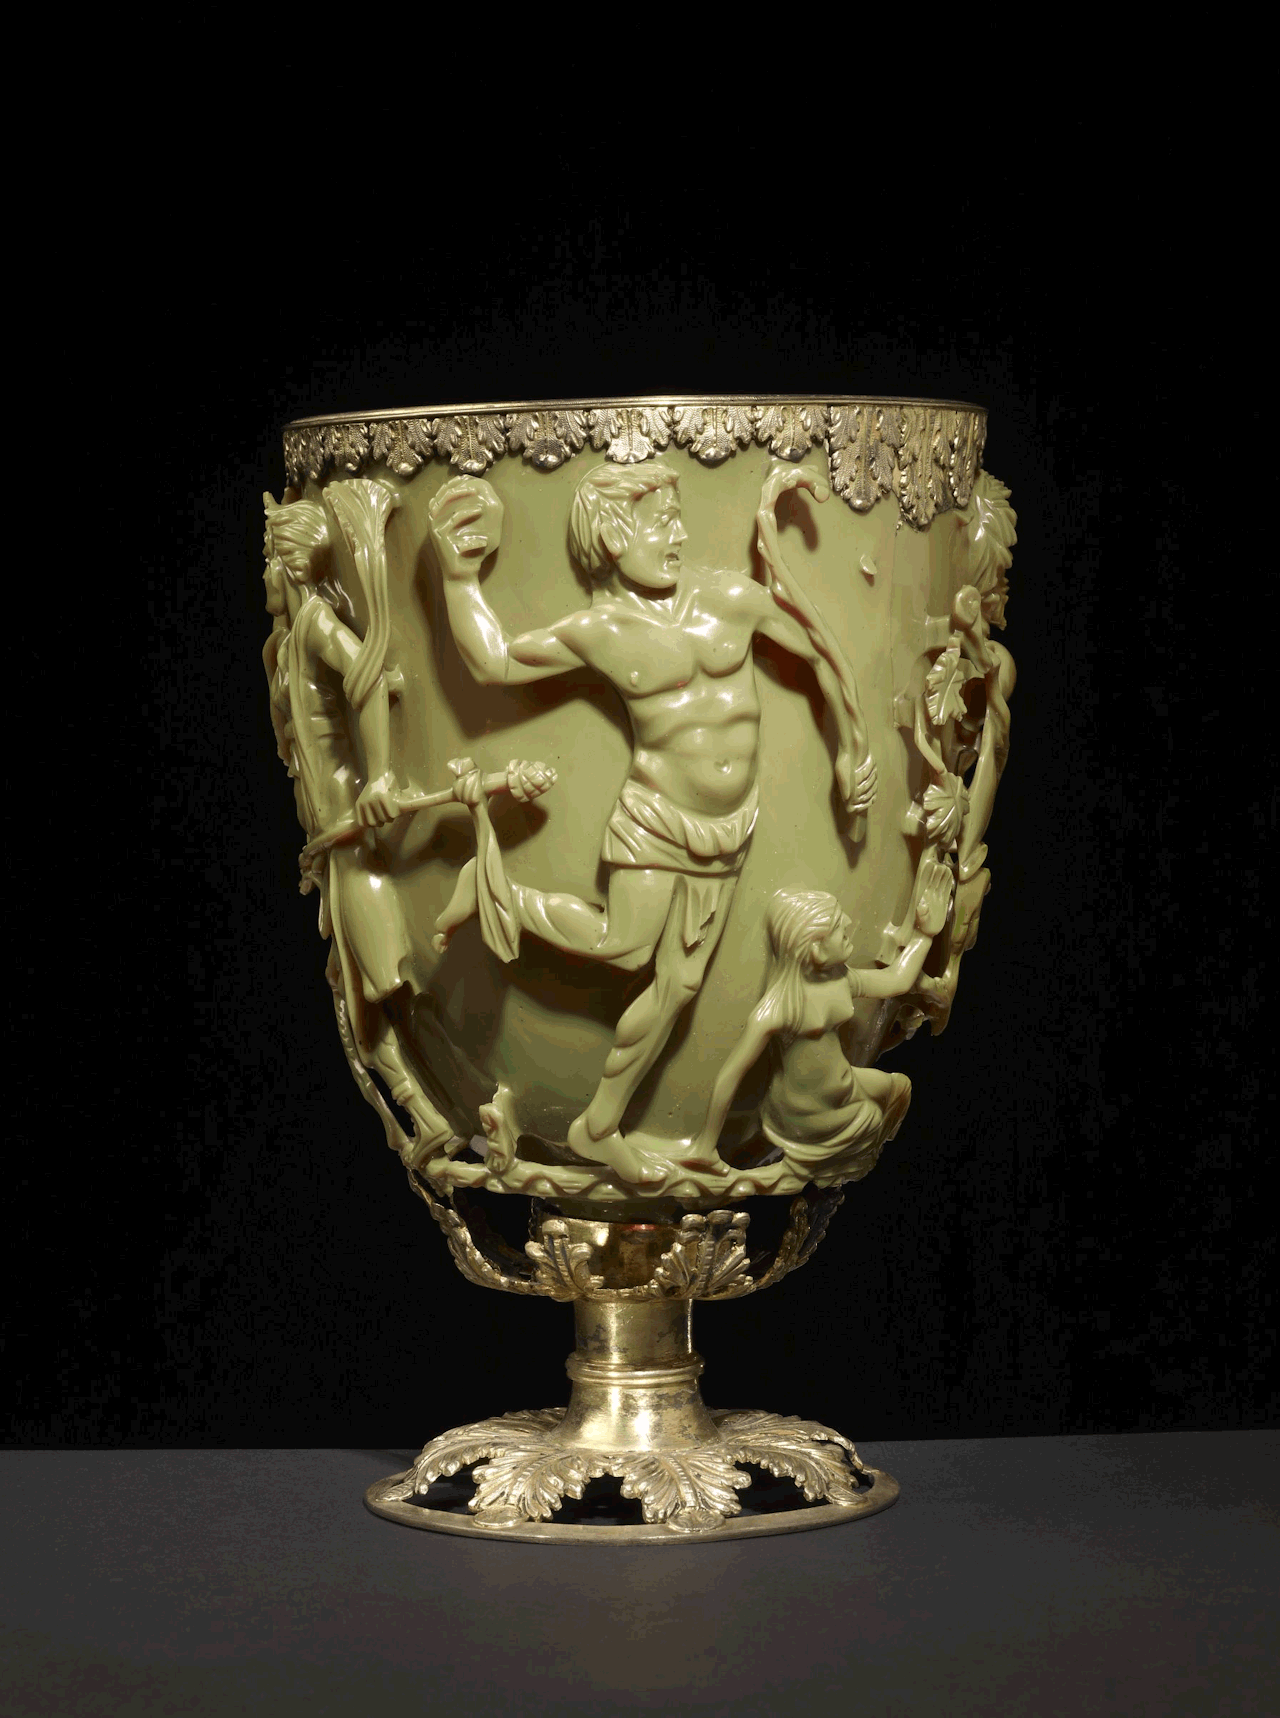 Roman Lycurgus Cup adalah piala Rom berwarna hijau giok berusia 1,600 tahun. Apabila anda meletakkan sumber cahaya di dalamnya, ia akan berubah warna secara ajaib. Ia kelihatan hijau jed ketika menyala dari depan tetapi merah darah ketika menyala dari belakang atau dalam.